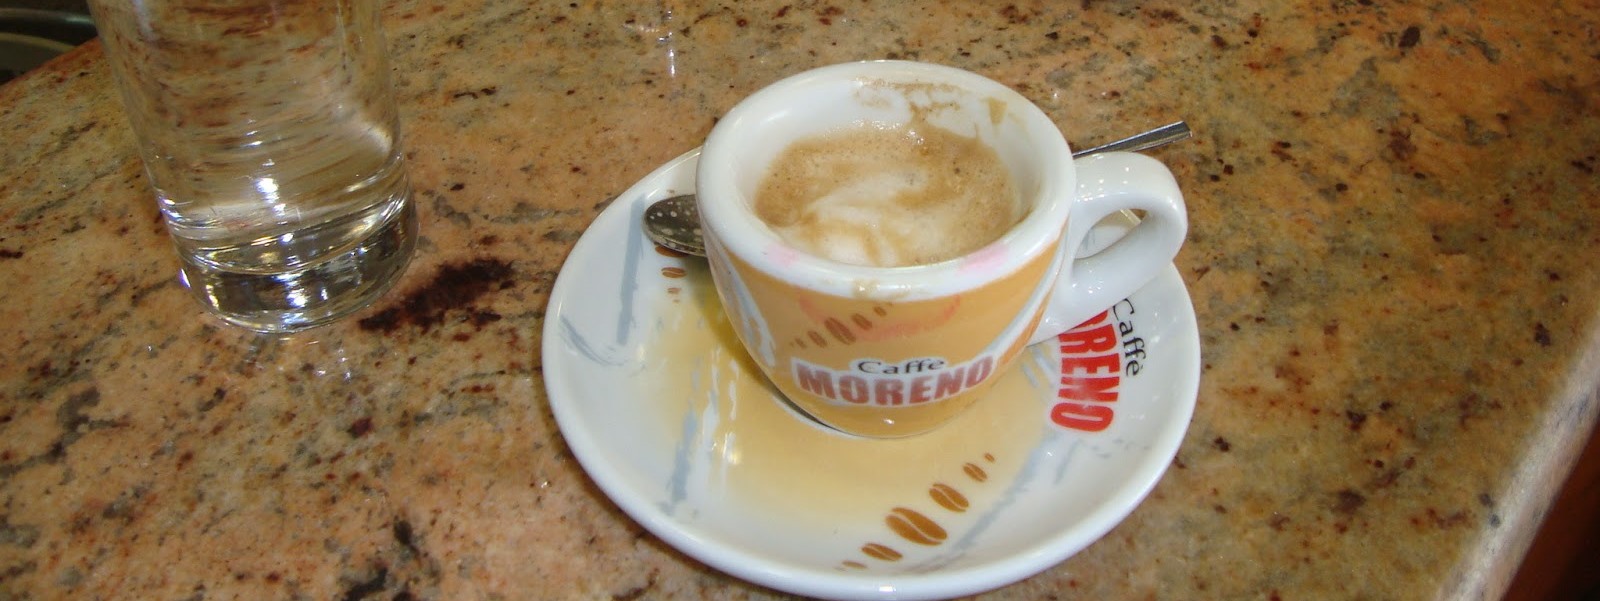 Италия, Неаполь, кофе эспрессо